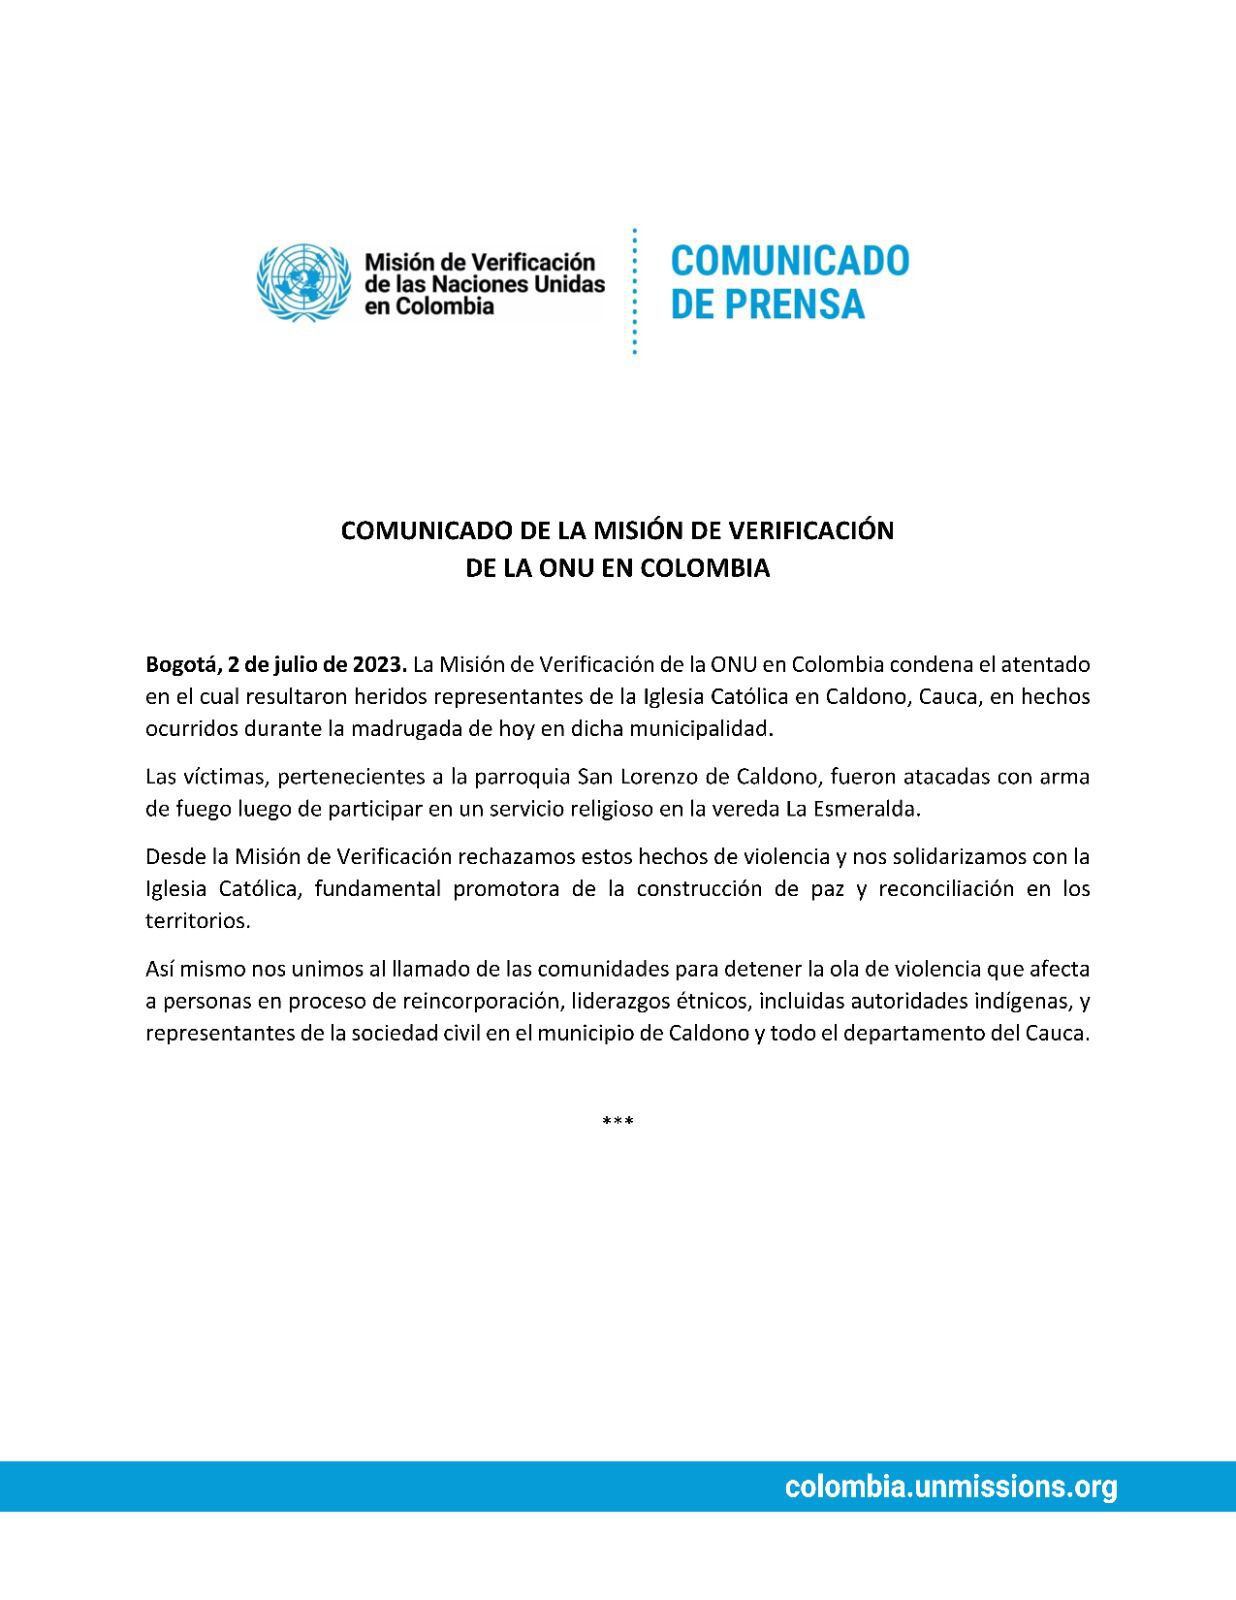 Este es el documento en el que la Misión de la ONU en Colombia expresa su rechazo a los hechos y se solidariza con la iglesia.